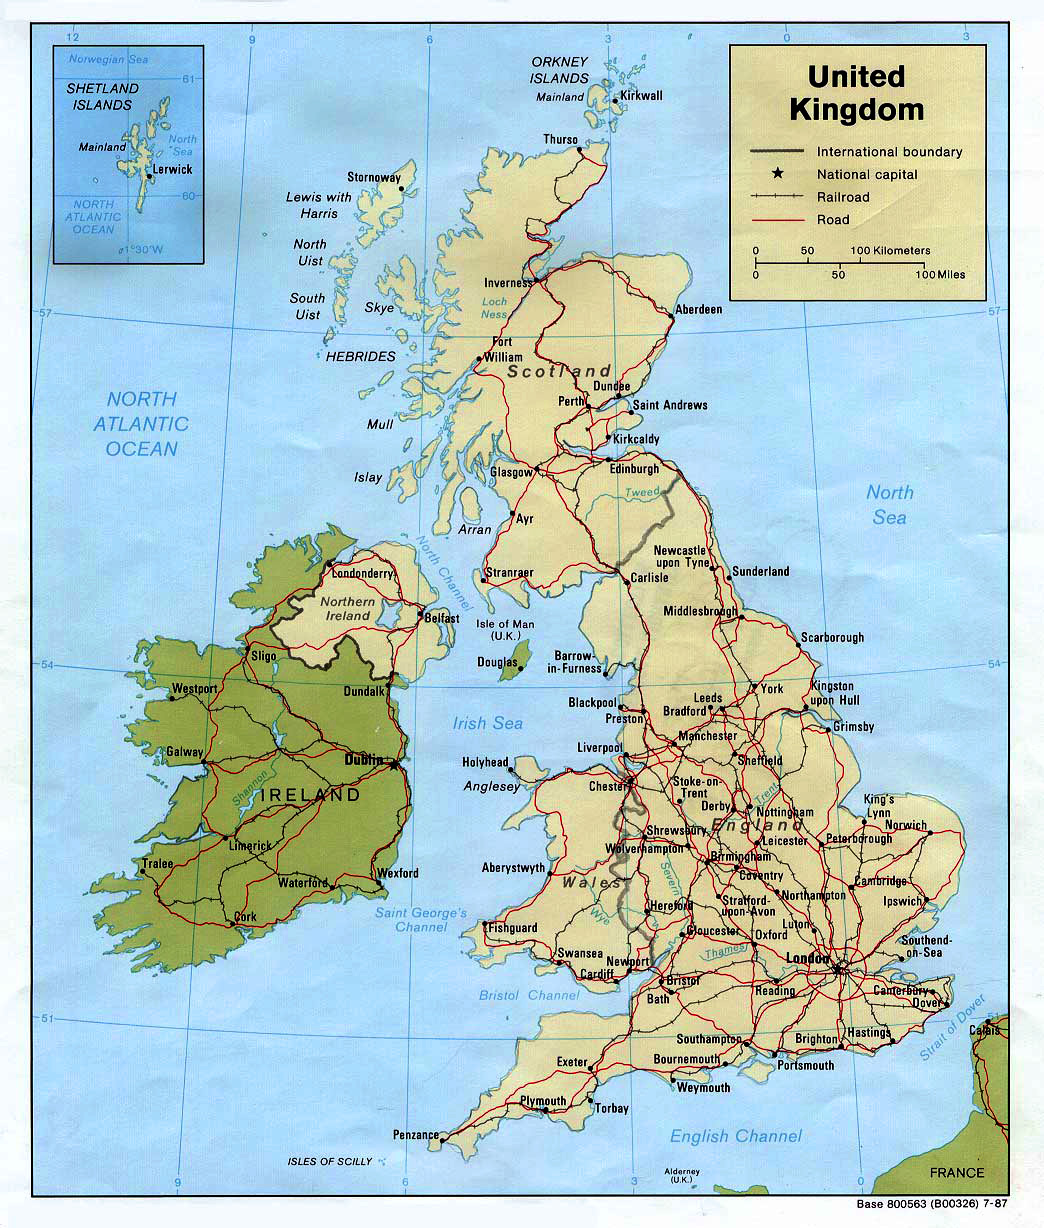 Політична карта Великої Британії - дороги, міста